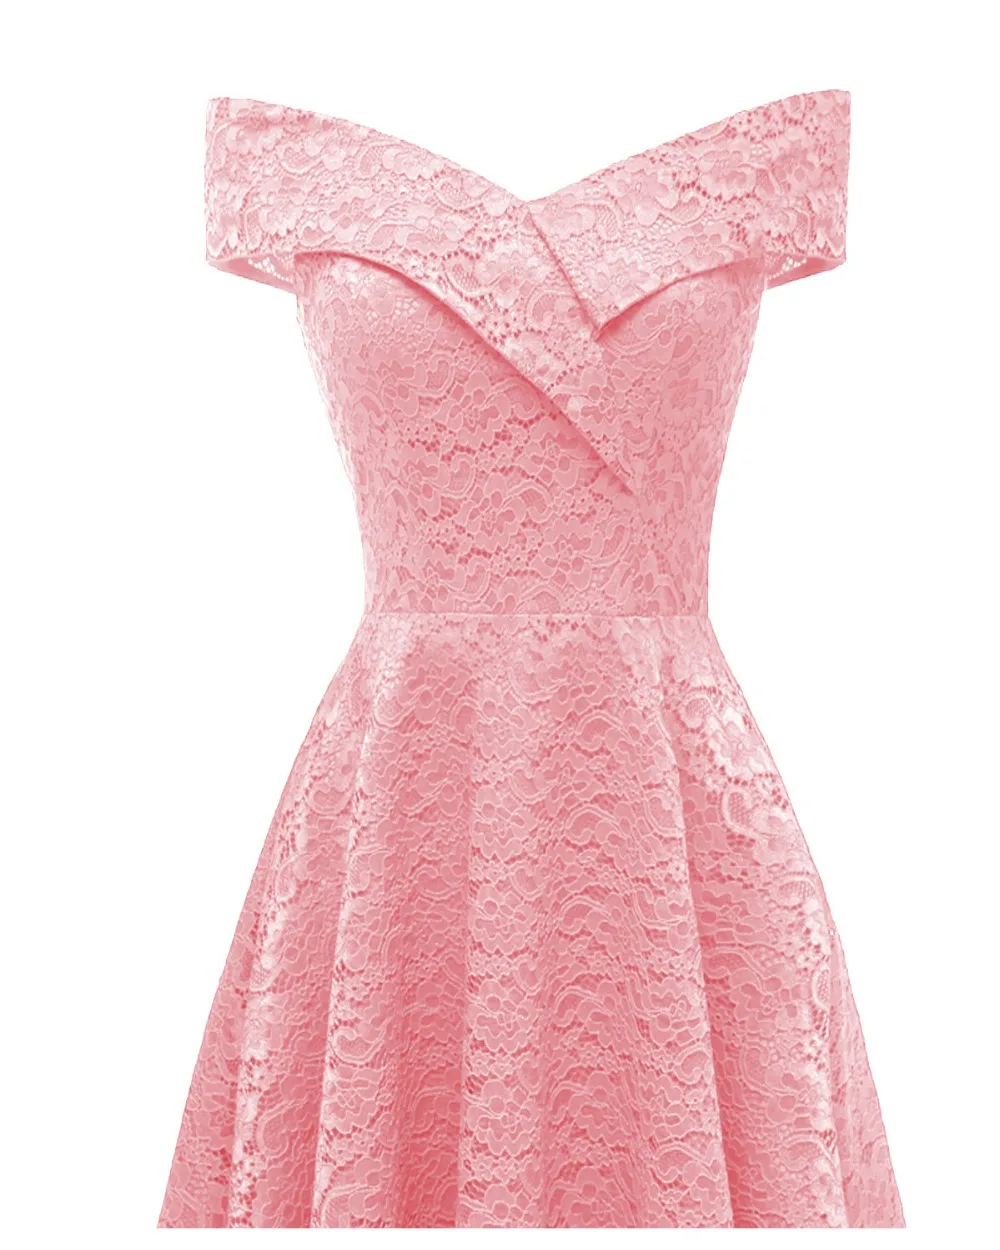 HYFZ9972F # Лодка шеи розовый с коротким кружевное платье подружки невесты Свадебная вечеринка платье Пром дешево оптом свадебное для невесты